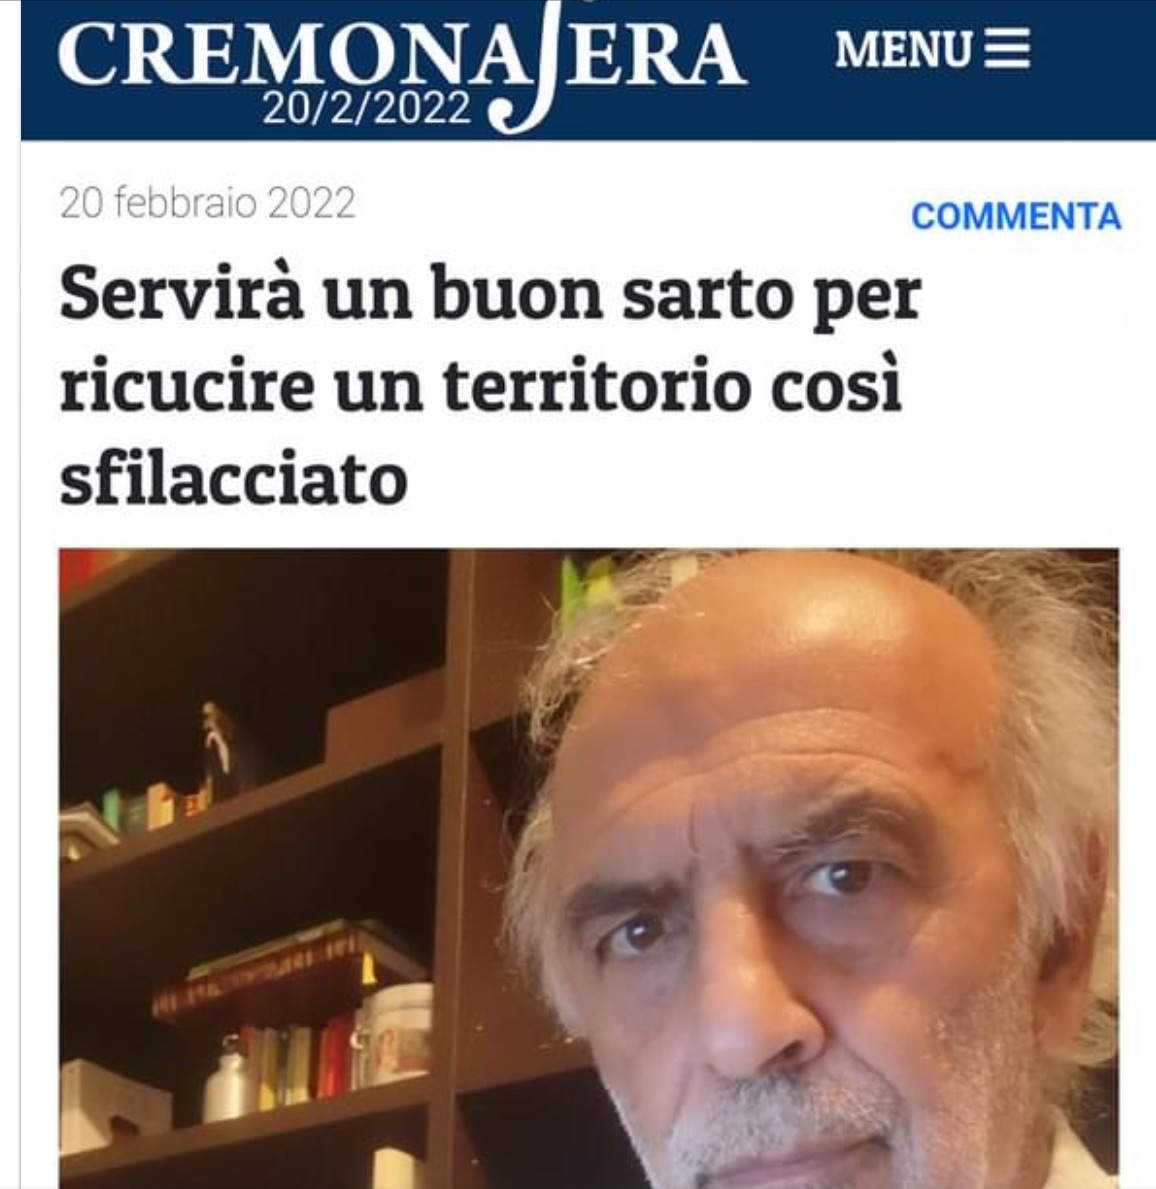 Antonio Grassi nel suo editoriale su Cremona Sera lancia la volata a Manuel Draghetti, candidato sindaco per il M5S